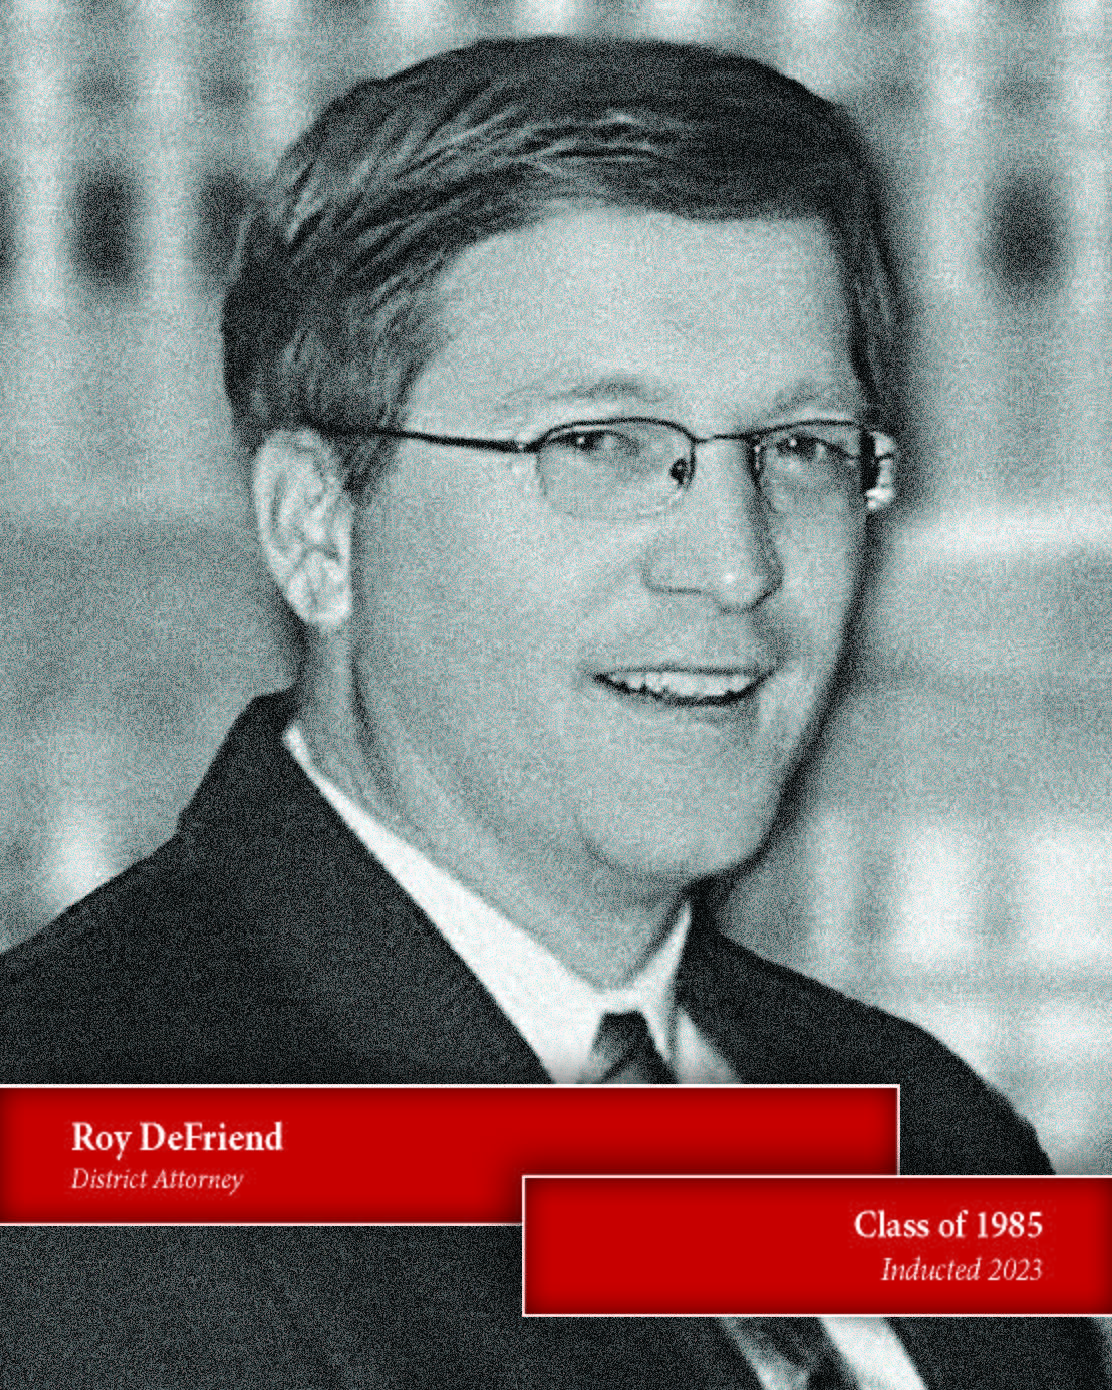 Roy DeFriend